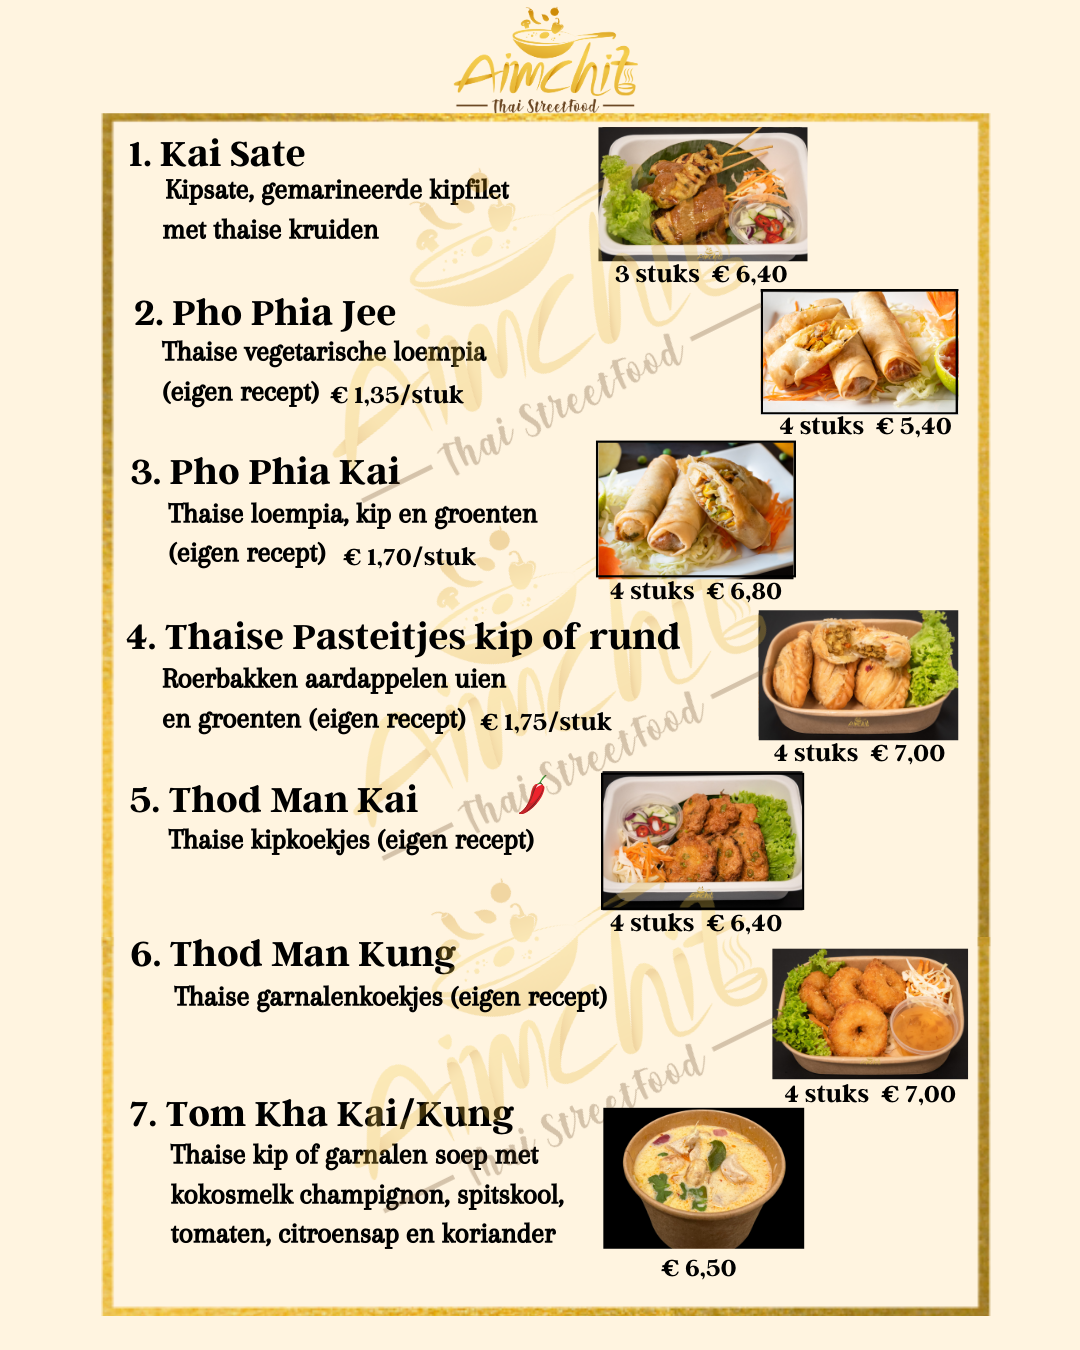 Aimchit Thai Streetfood